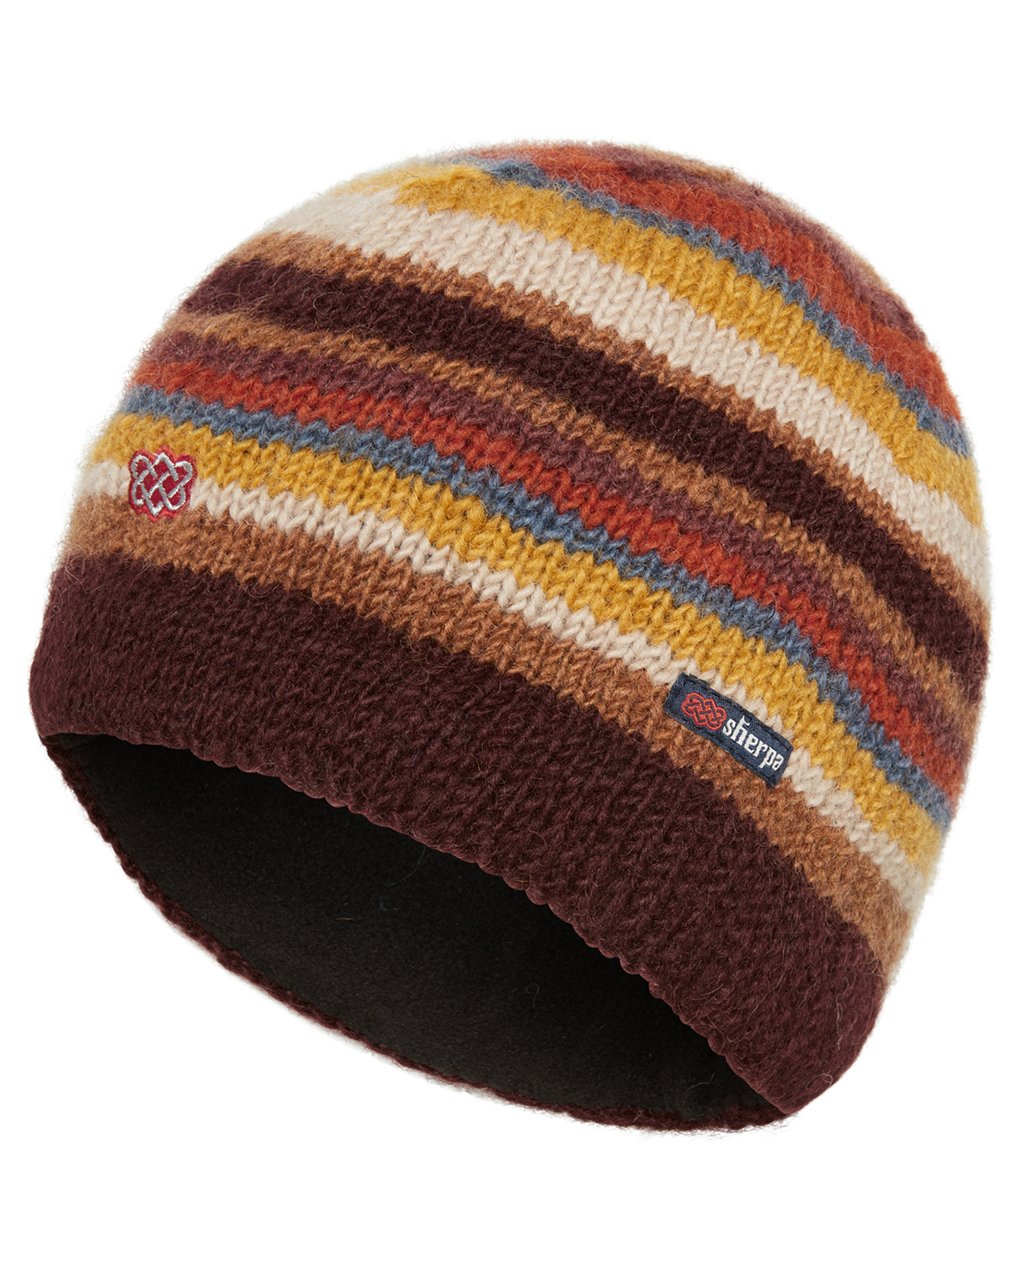 Sherpa - Pangdey Hat